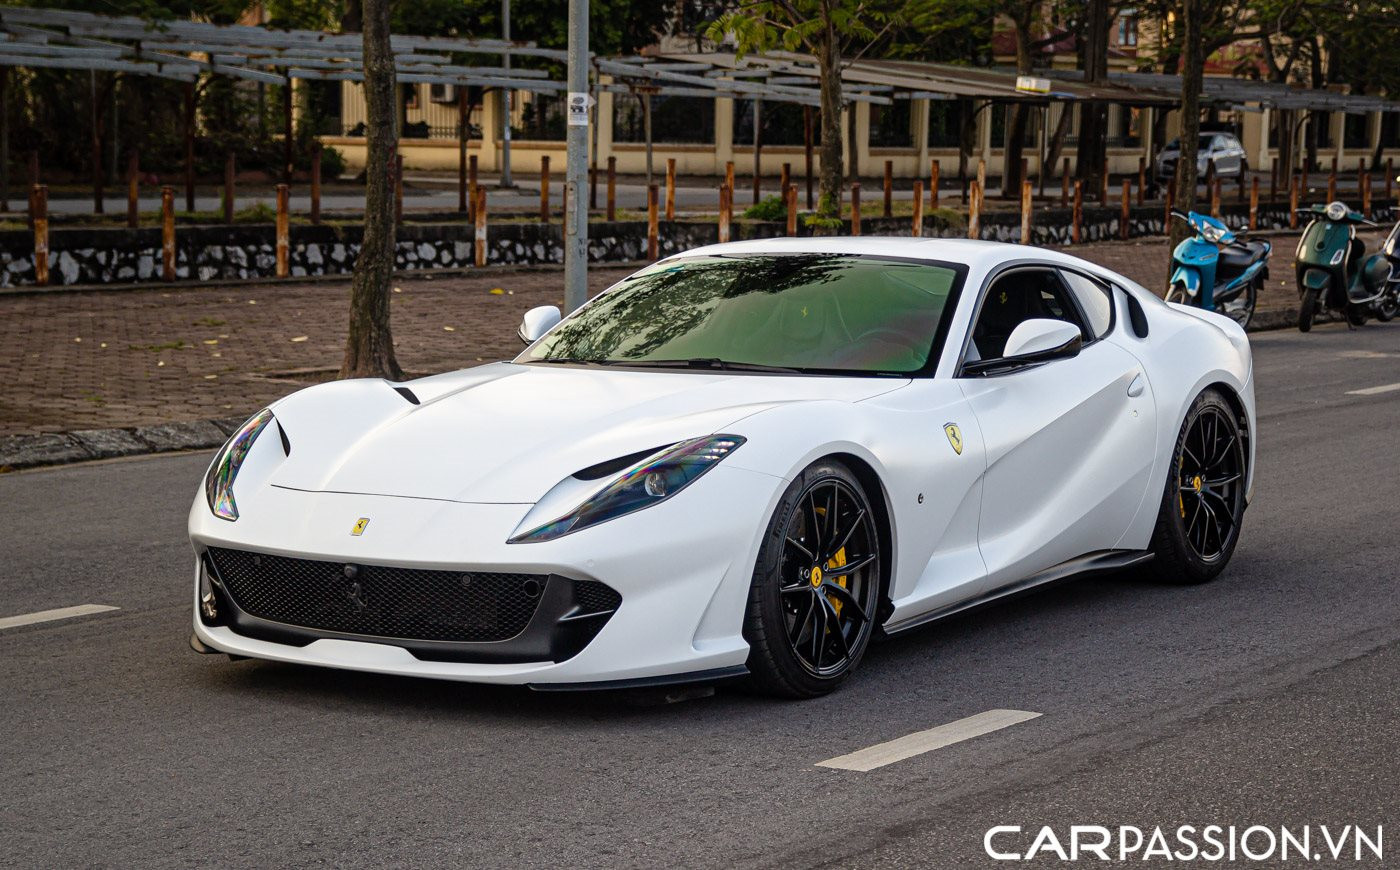 Ferrari bringt einen Supersportwagen mit V12-Motor auf den Markt